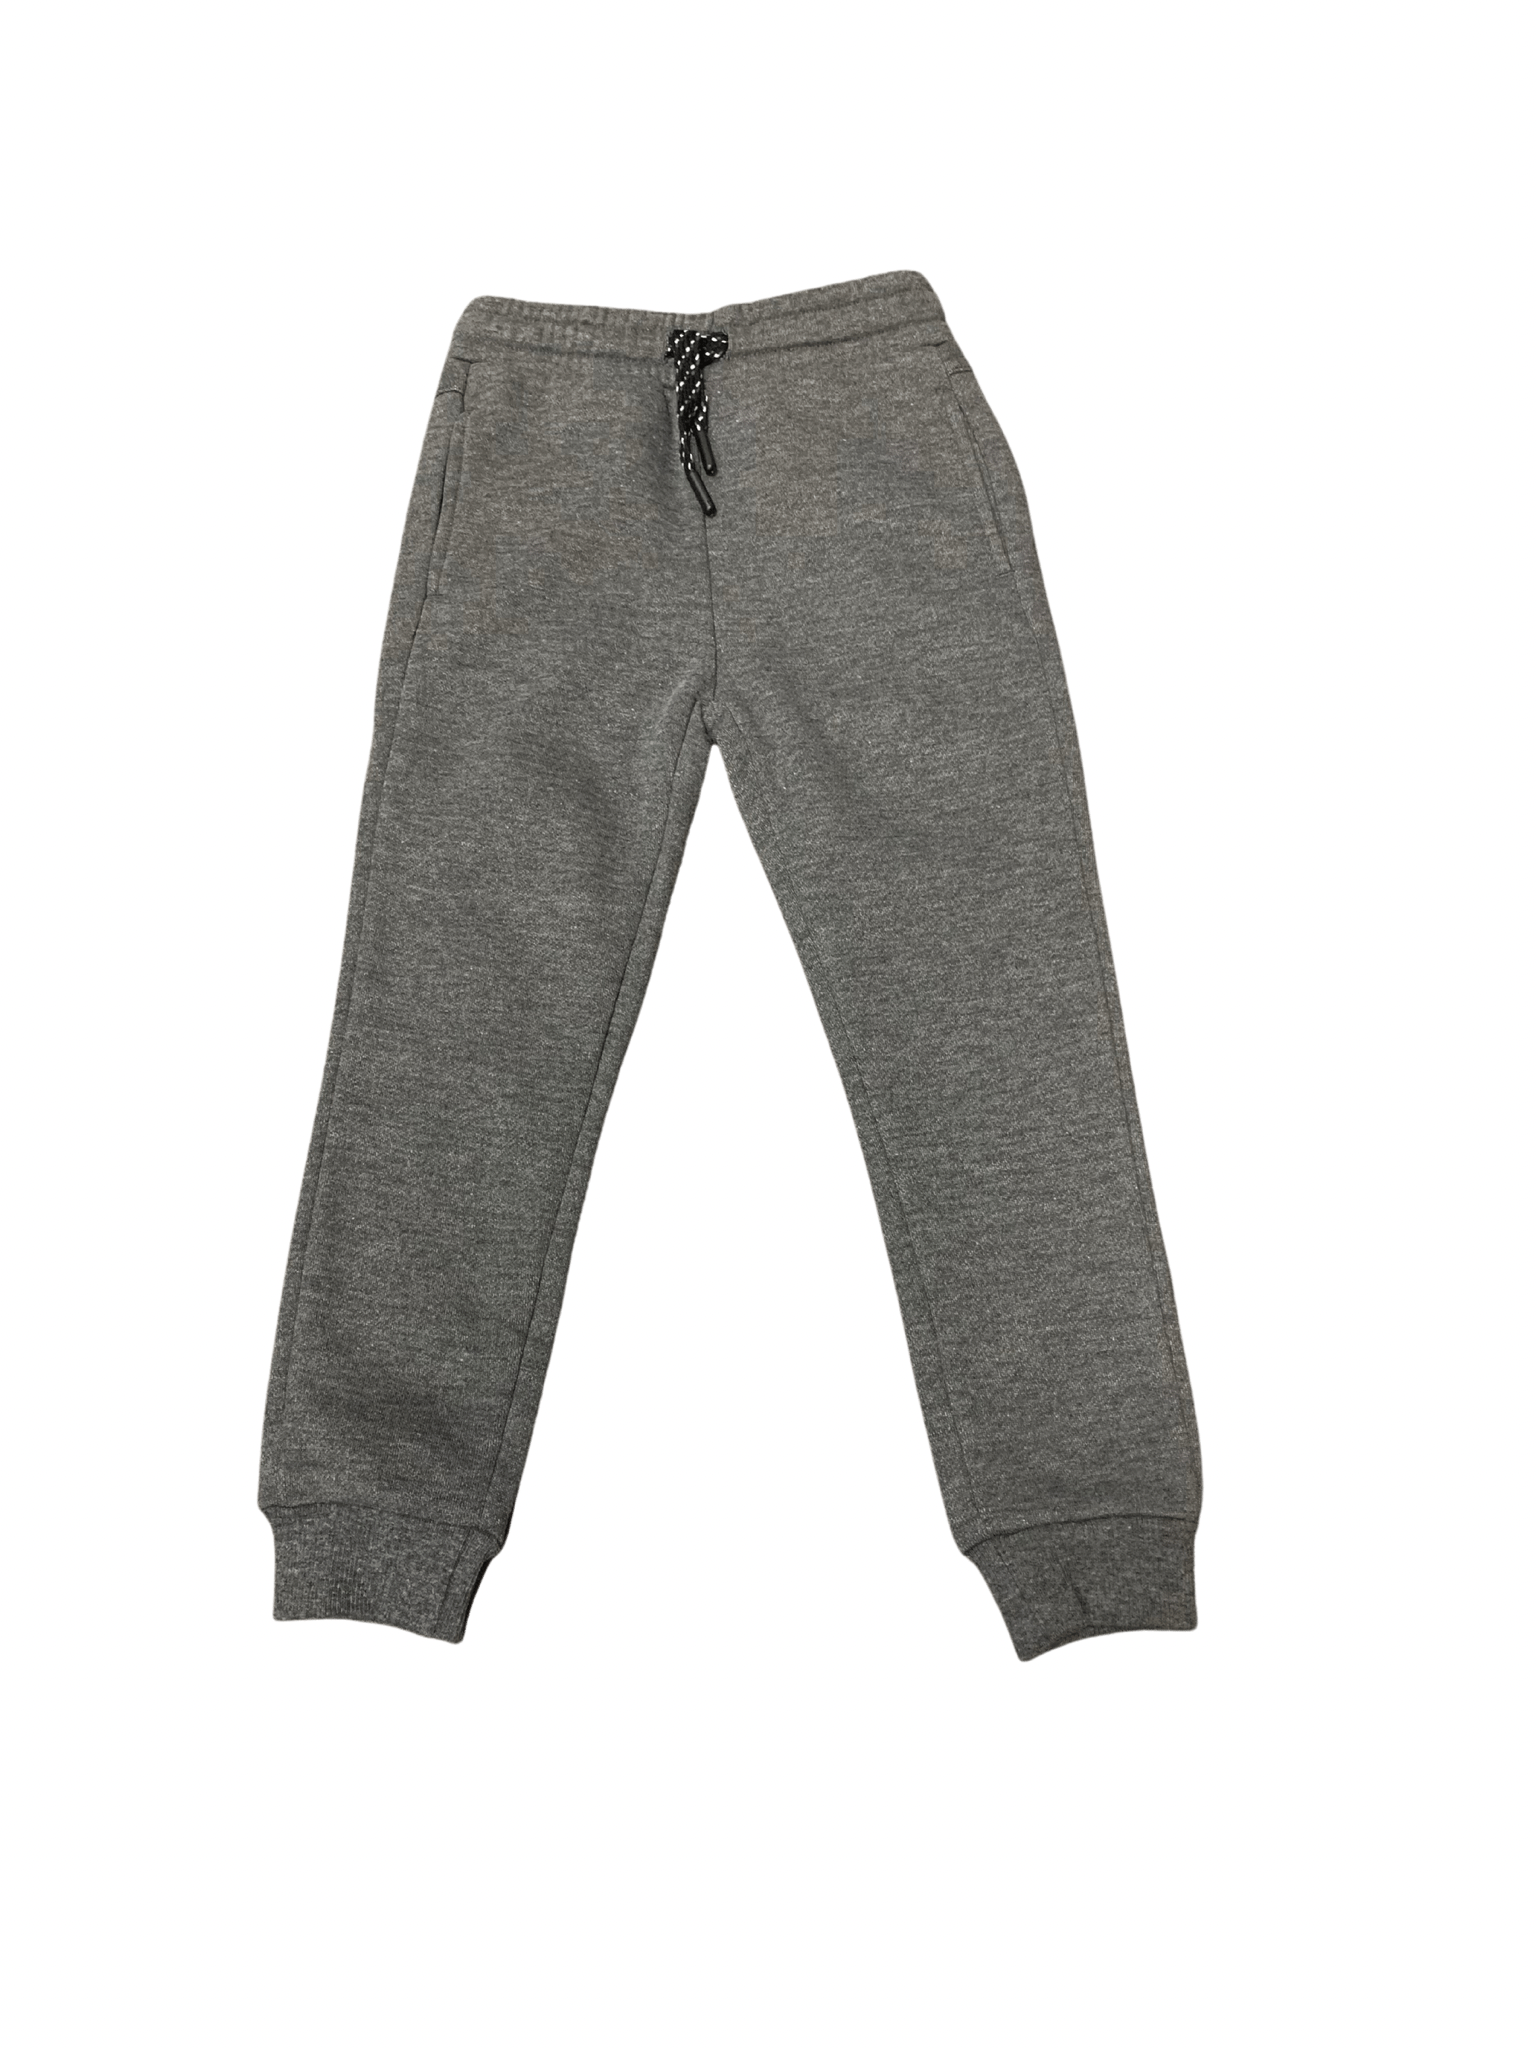 M.I.D - Pantalon jogger doublé, gris